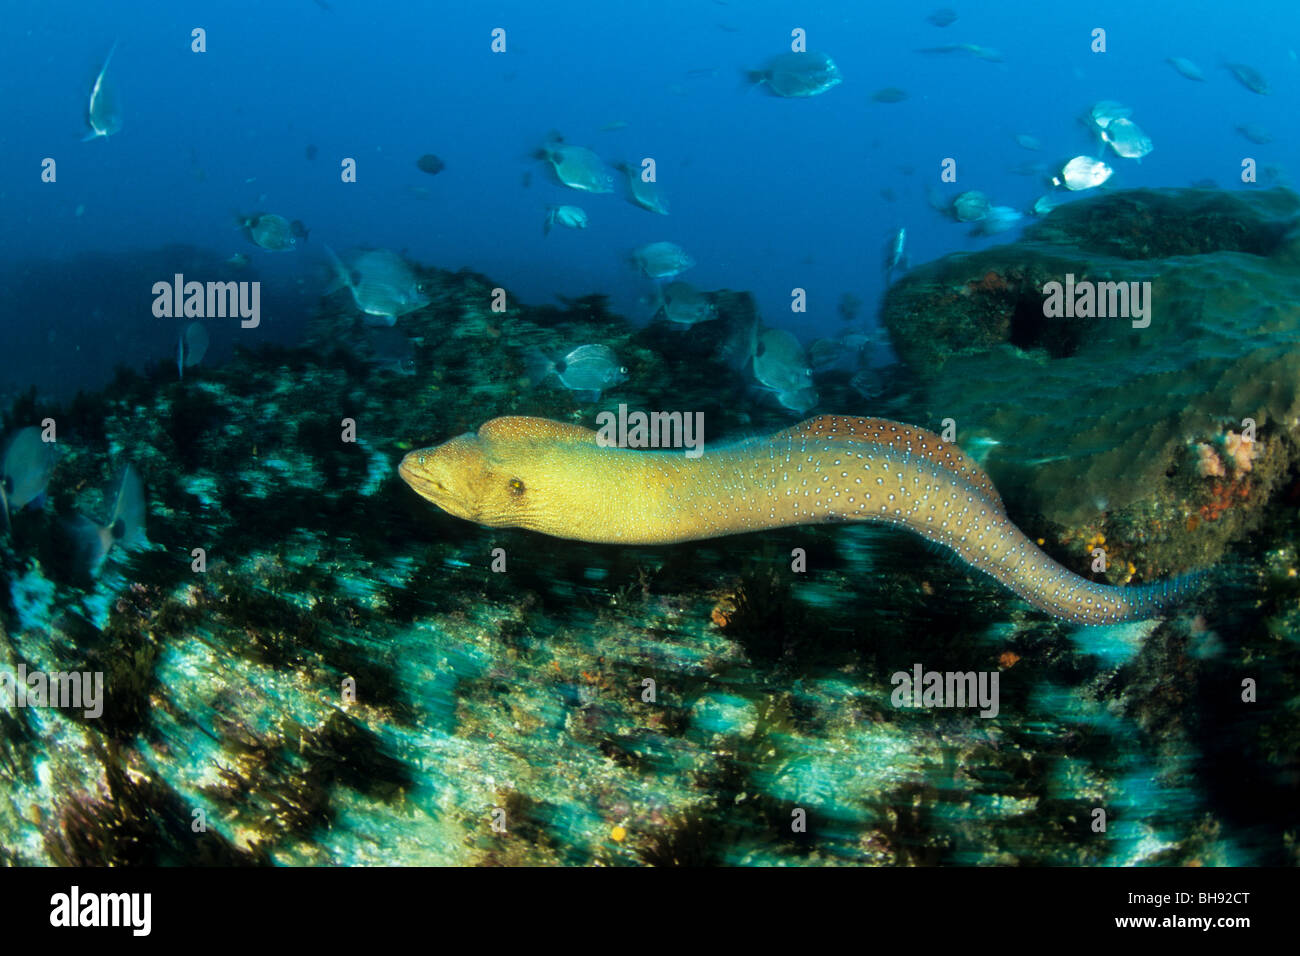 Freischwimmende Yellowmouth Moray, Gymnothorax Nudivomer, Aliwal Shoals, Kwazulu-Natal, Indischer Ozean, Südafrika Stockfoto